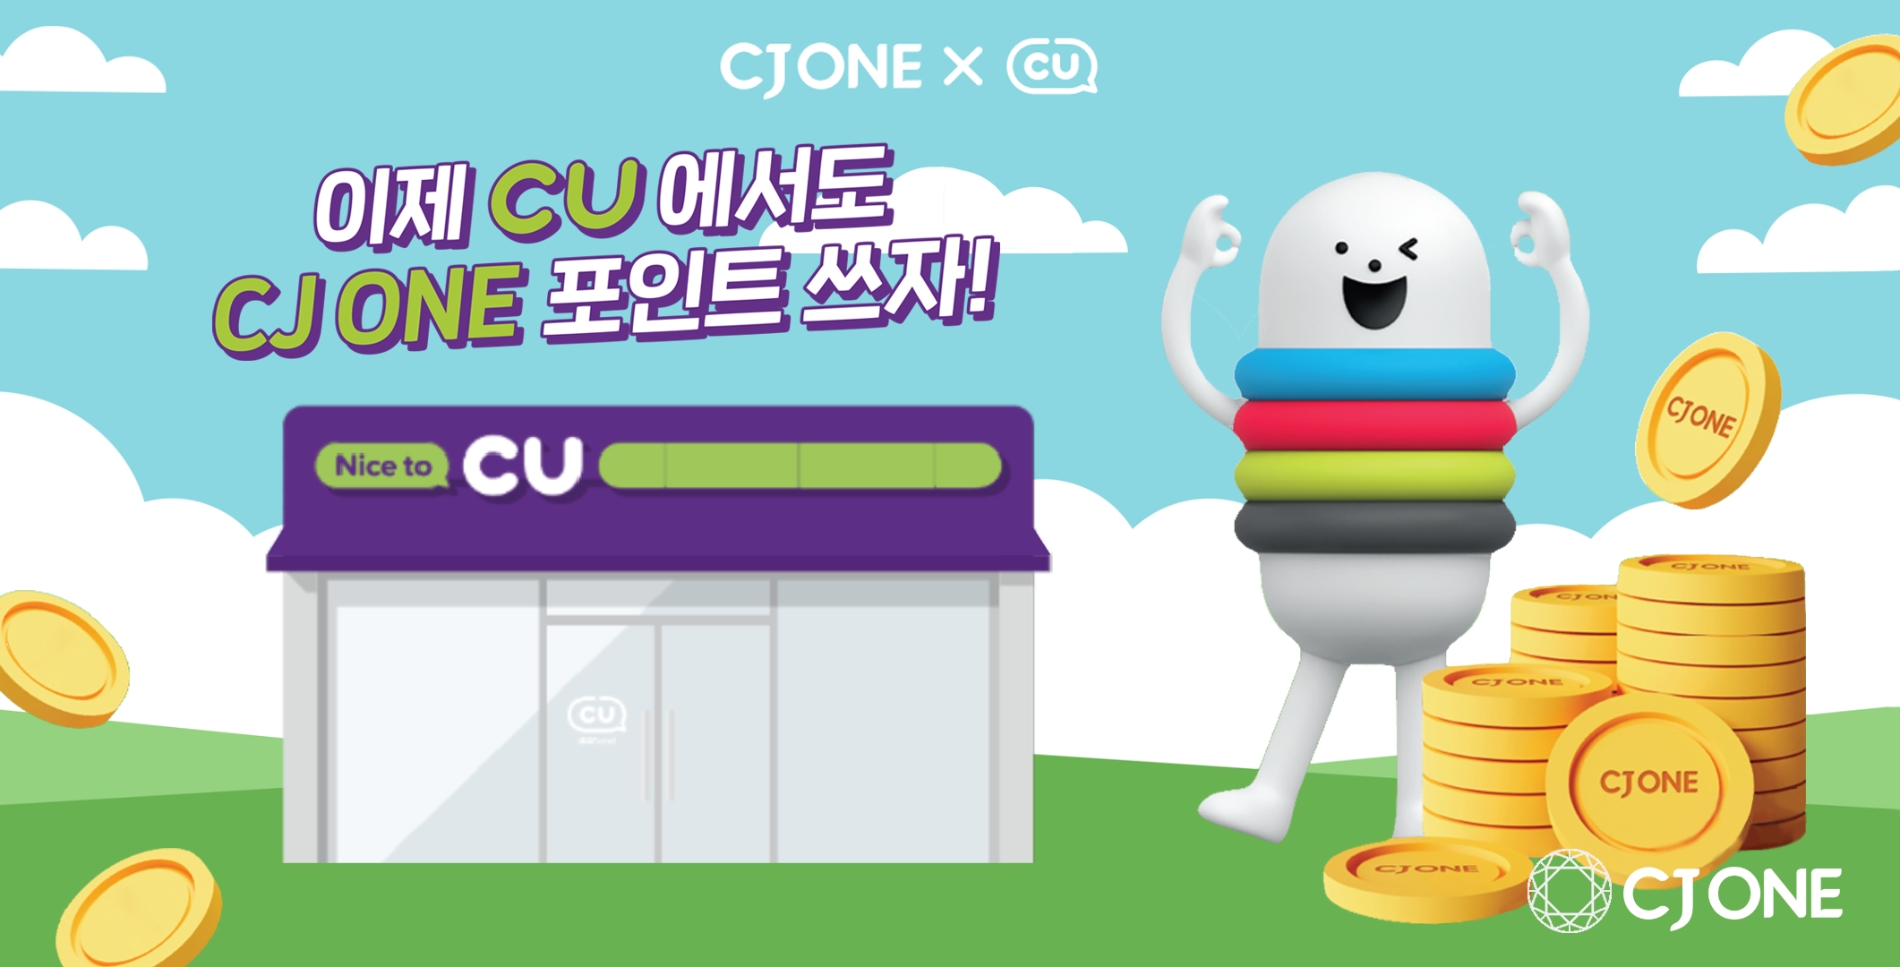 [생활경제 이슈] CJ ONE, 회원 포인트 사용 편의 증대 위해 CU와 제휴 外